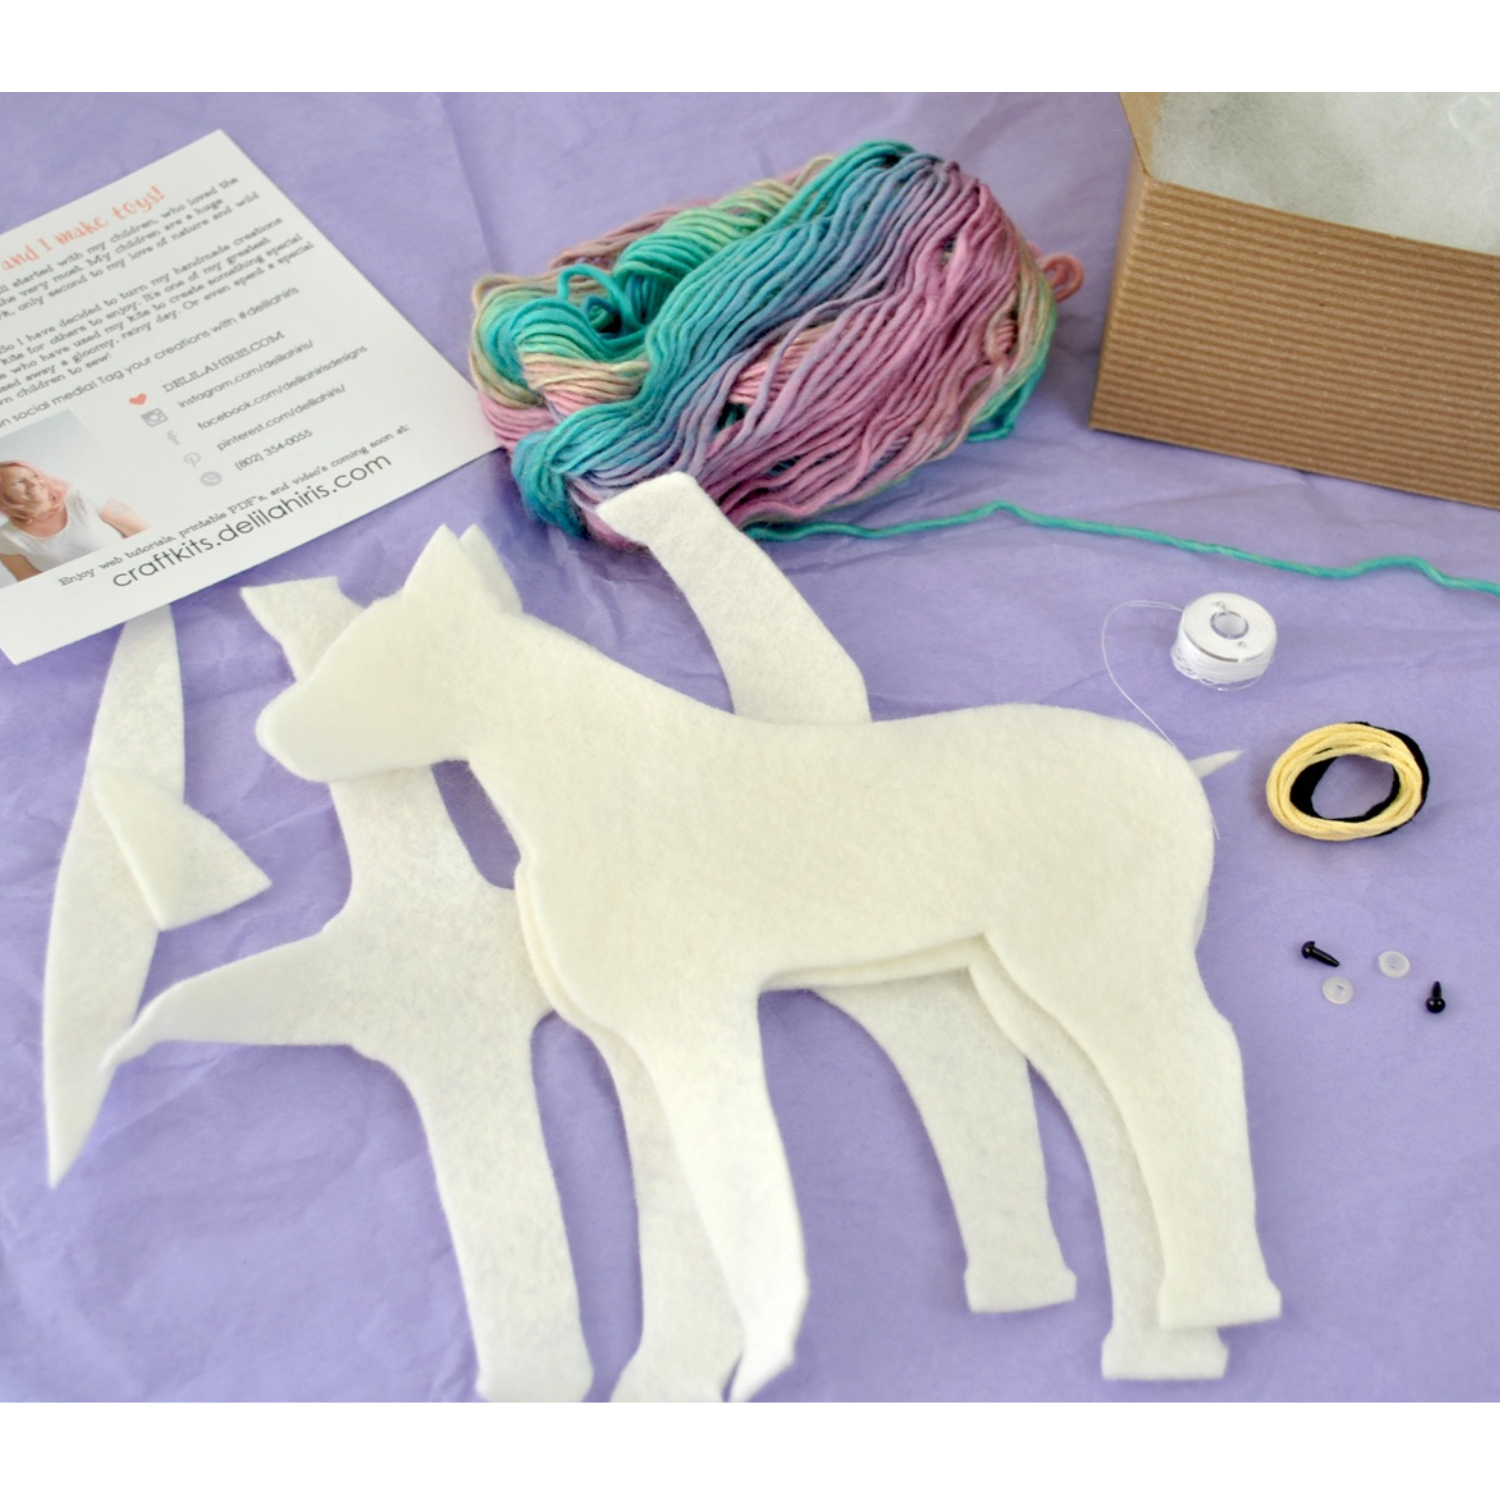 Wildflower Toys Wildflower Toys Unicorn Sewing Kit For Girls - Felt Craft  Kit For Beginners - Makes 2 Glitter White Felt Stuffed Unicorns  Art_Craft_Kit 